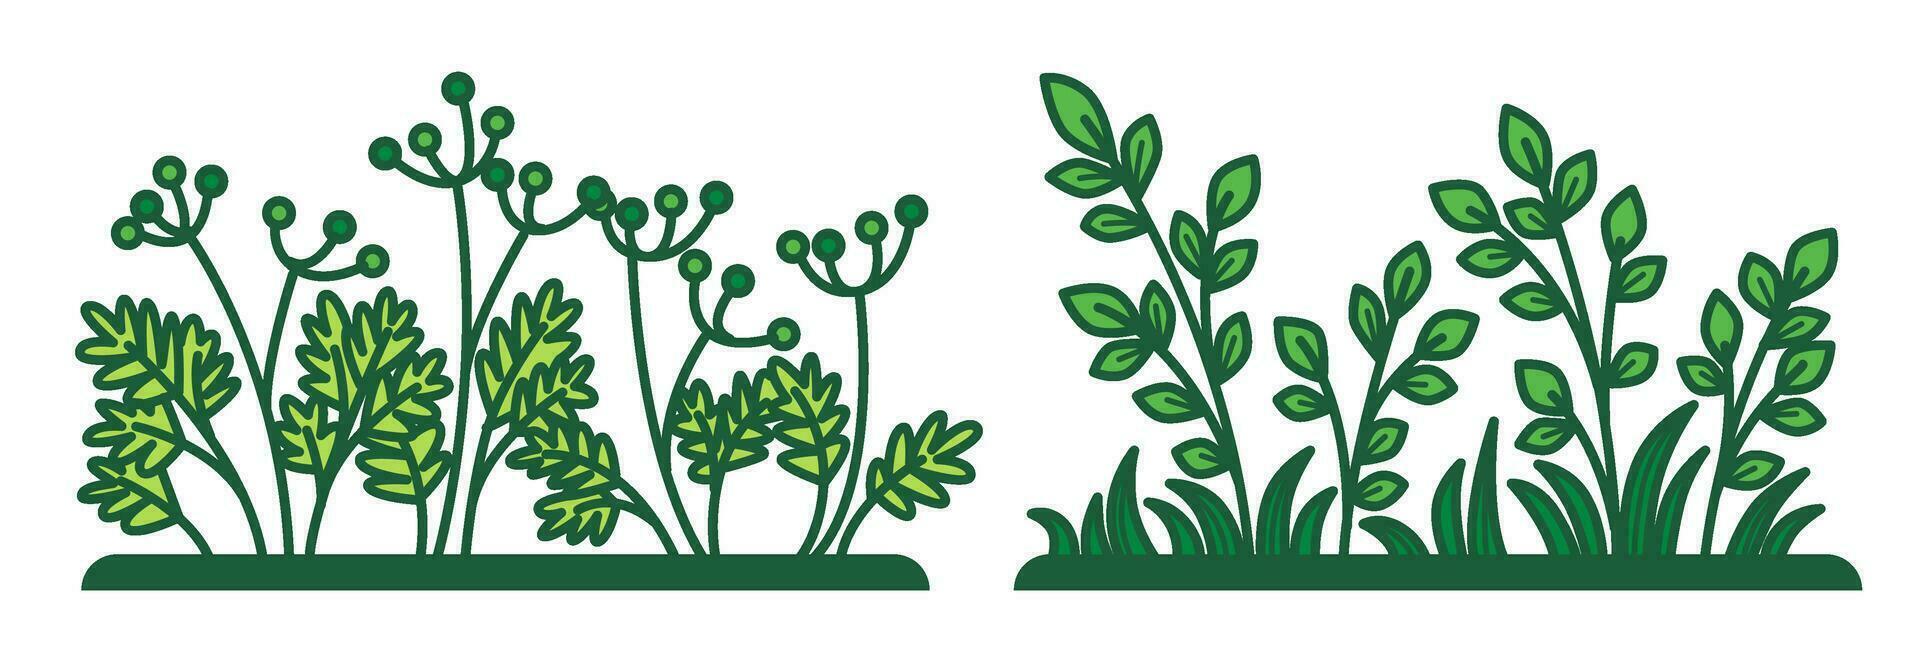 herbe et végétation de prés ou champ vecteur